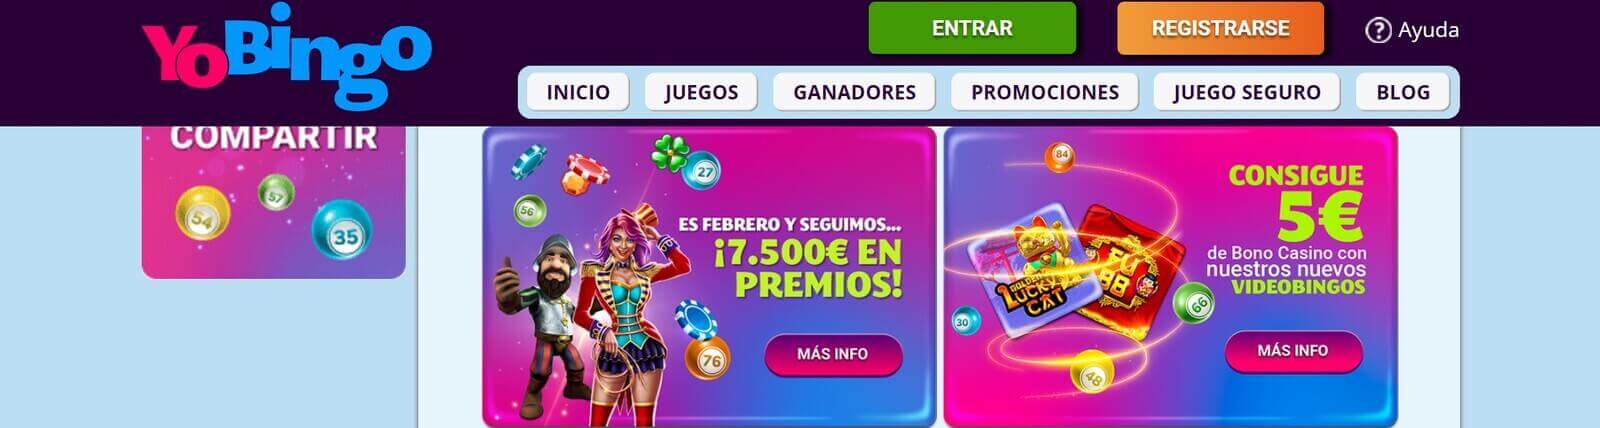 Promociones de Yo Bingo online en España